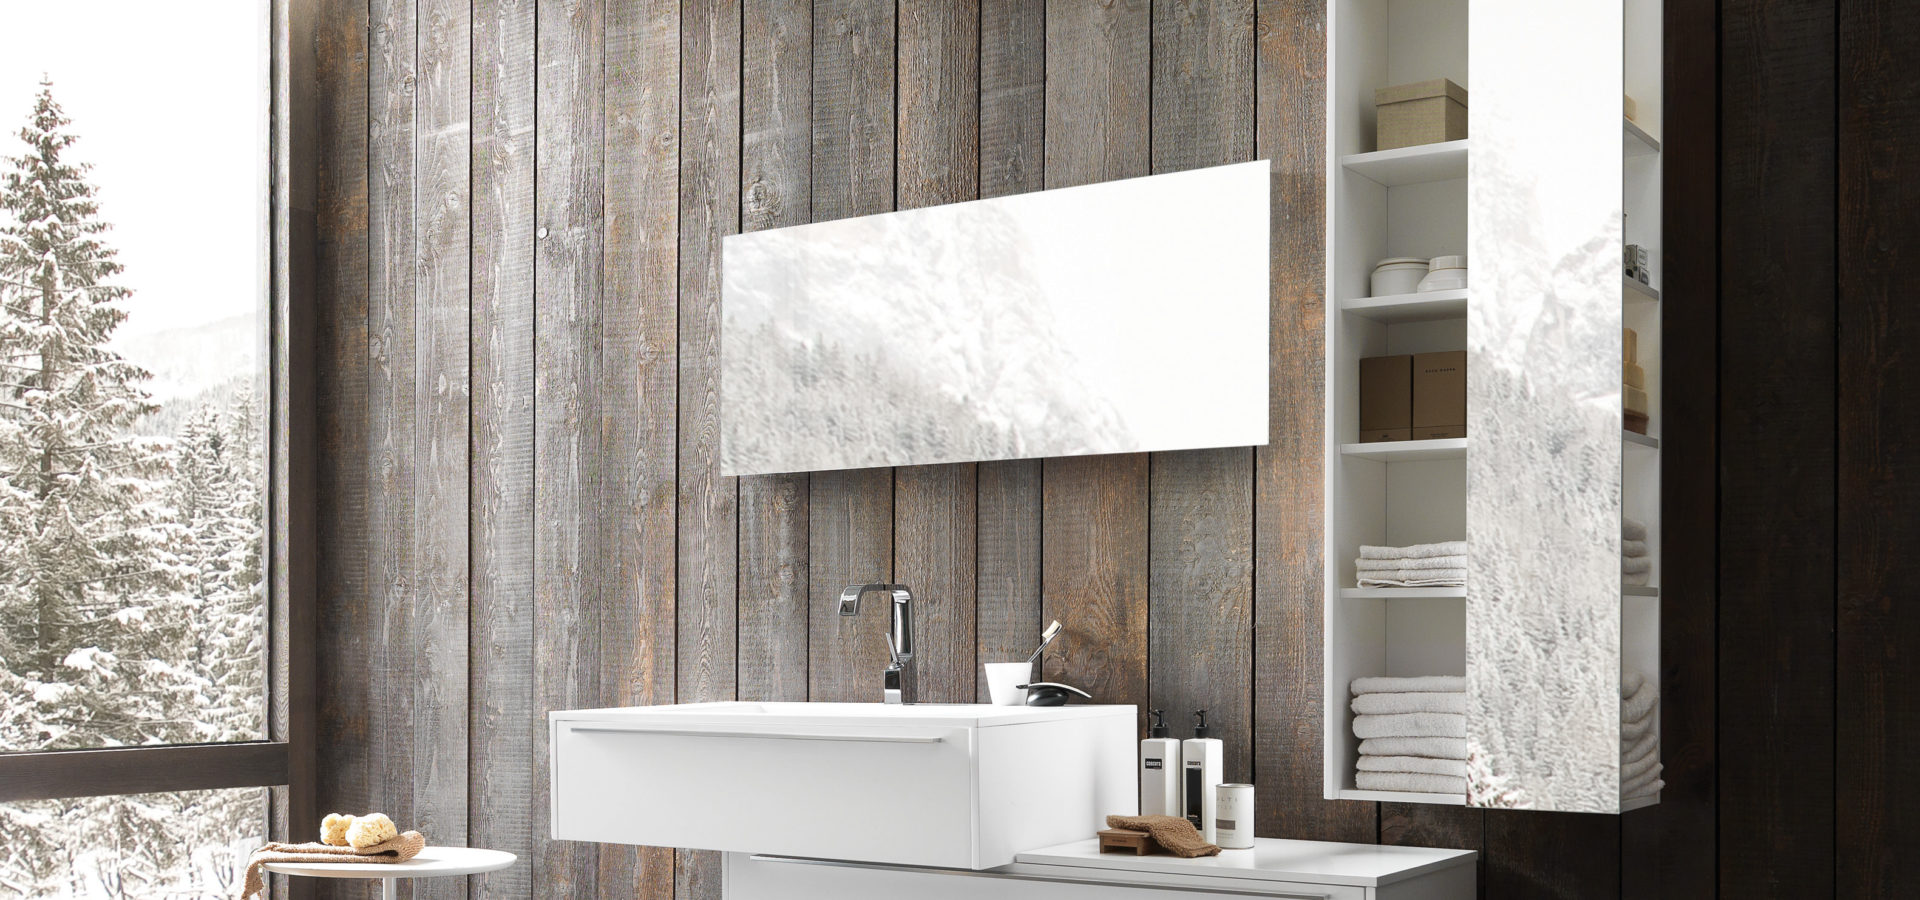 Modern Bathroom Mirror Wall Design